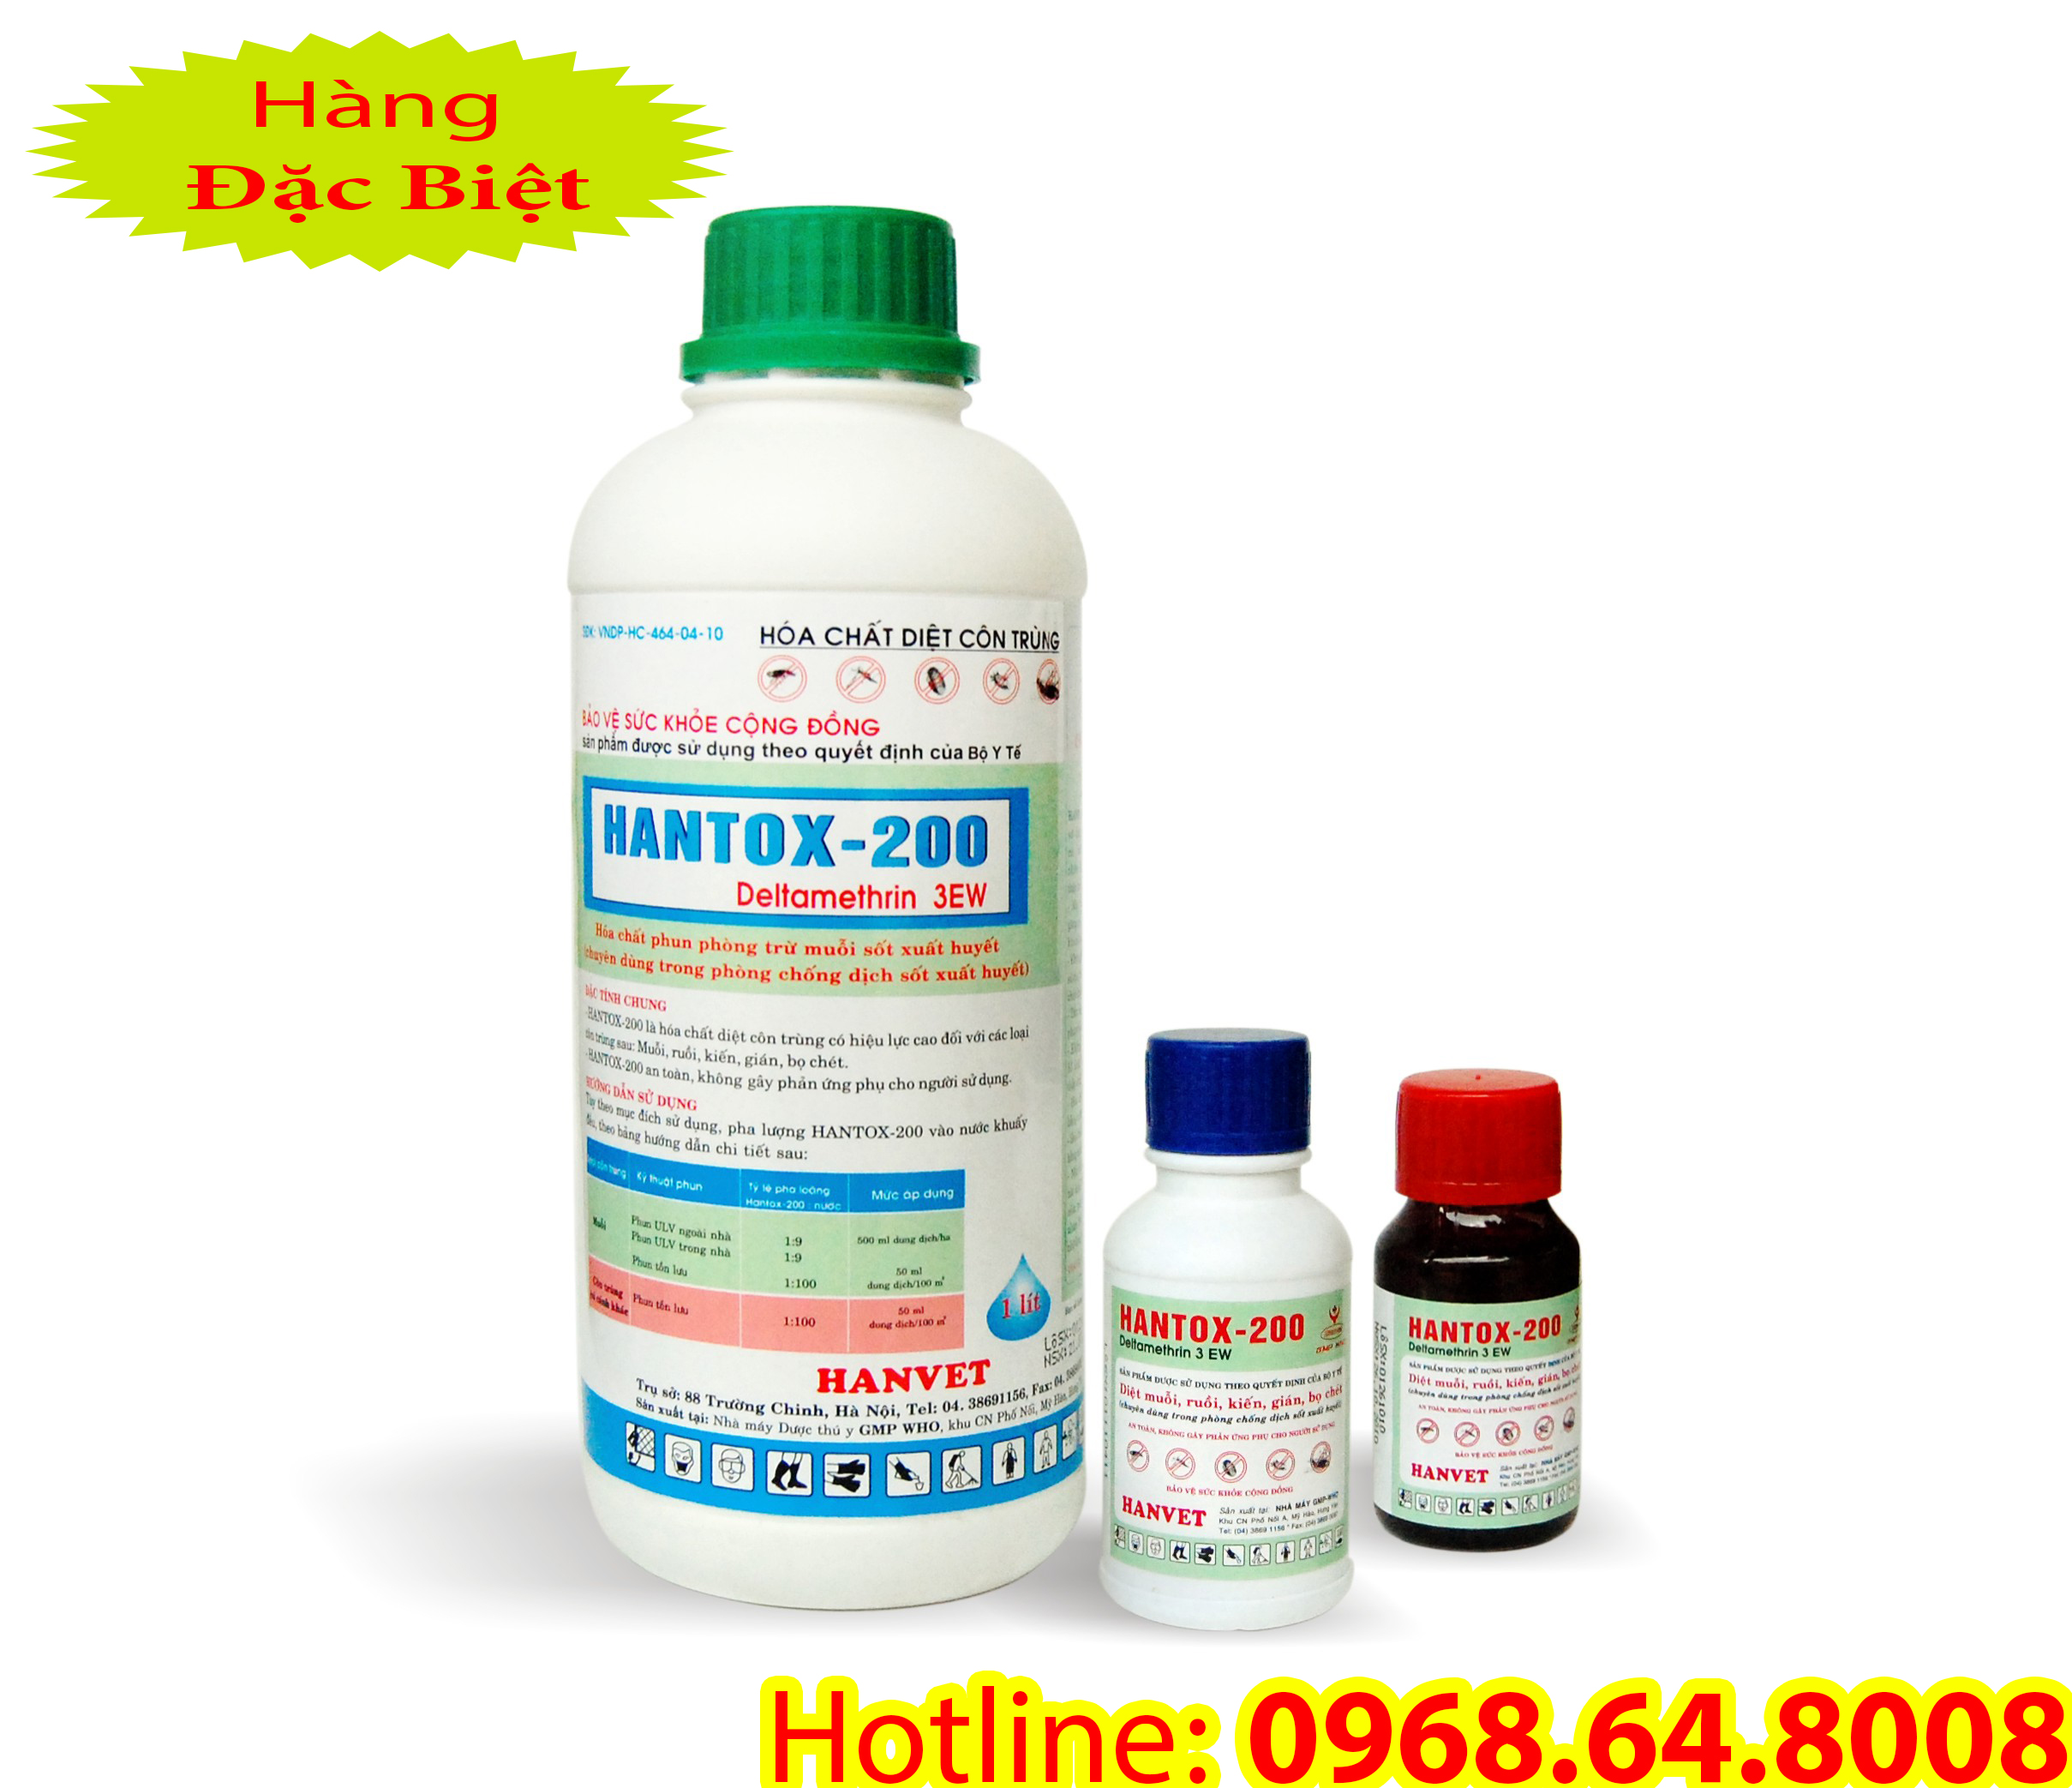 Hantox 200 (1Lít) - (SX tại VIỆT NAM) - Bộ Y Tế - Thuốc diệt côn trùng, muỗi, gián, ruồi, kiến, bọ chét...